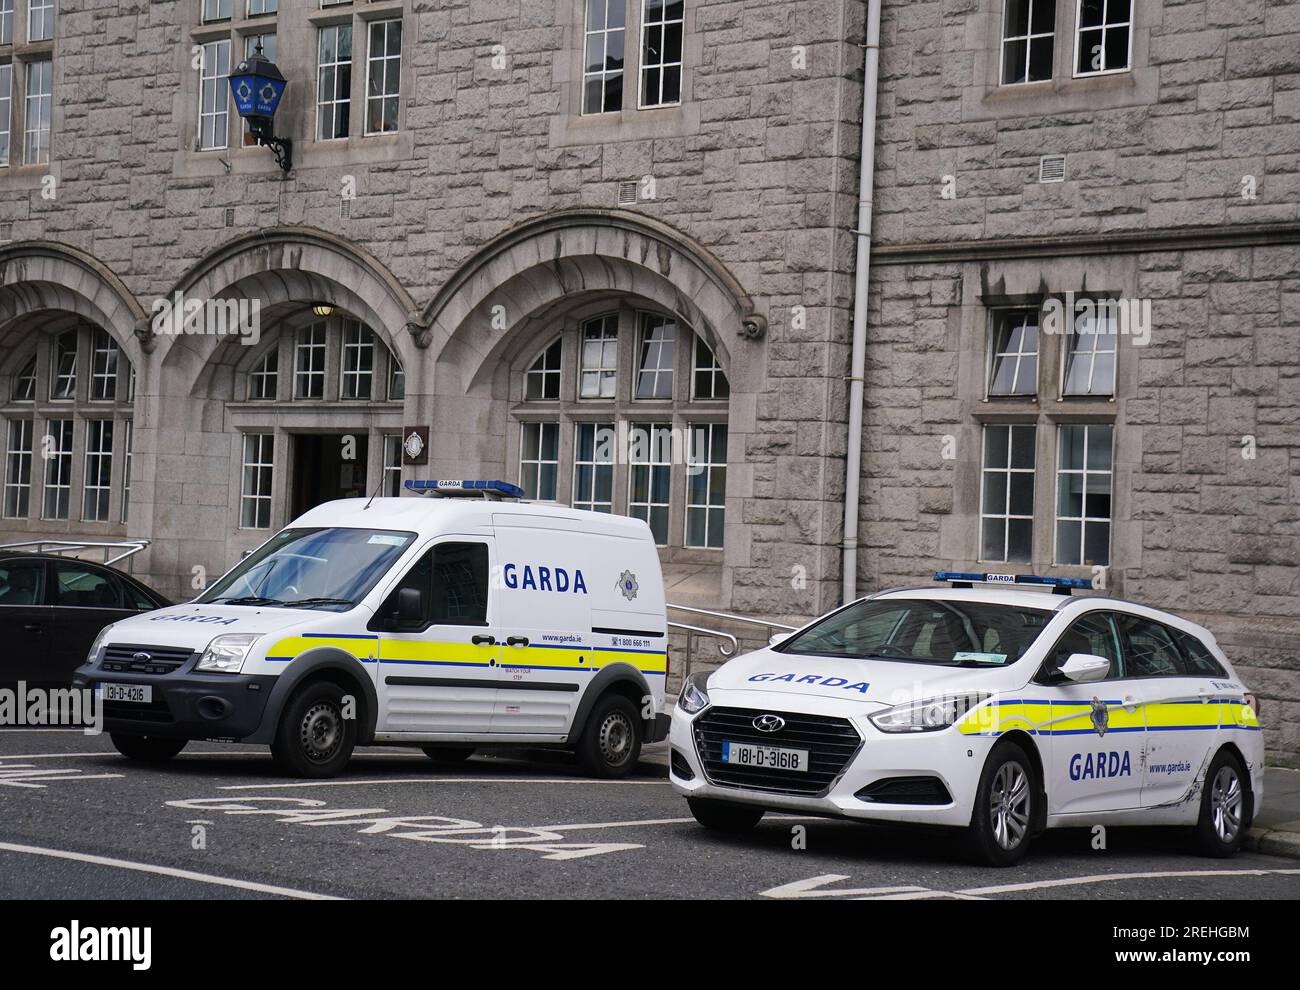 Veicoli Garda parcheggiati fuori dalla stazione di Pearse Street nel centro di Dublino. Il ministro della giustizia Helen McEntee ha dichiarato che fornirà ulteriori 10 milioni di euro di finanziamenti per la polizia di Dublino. Data immagine: Venerdì 28 luglio 2023. Foto Stock